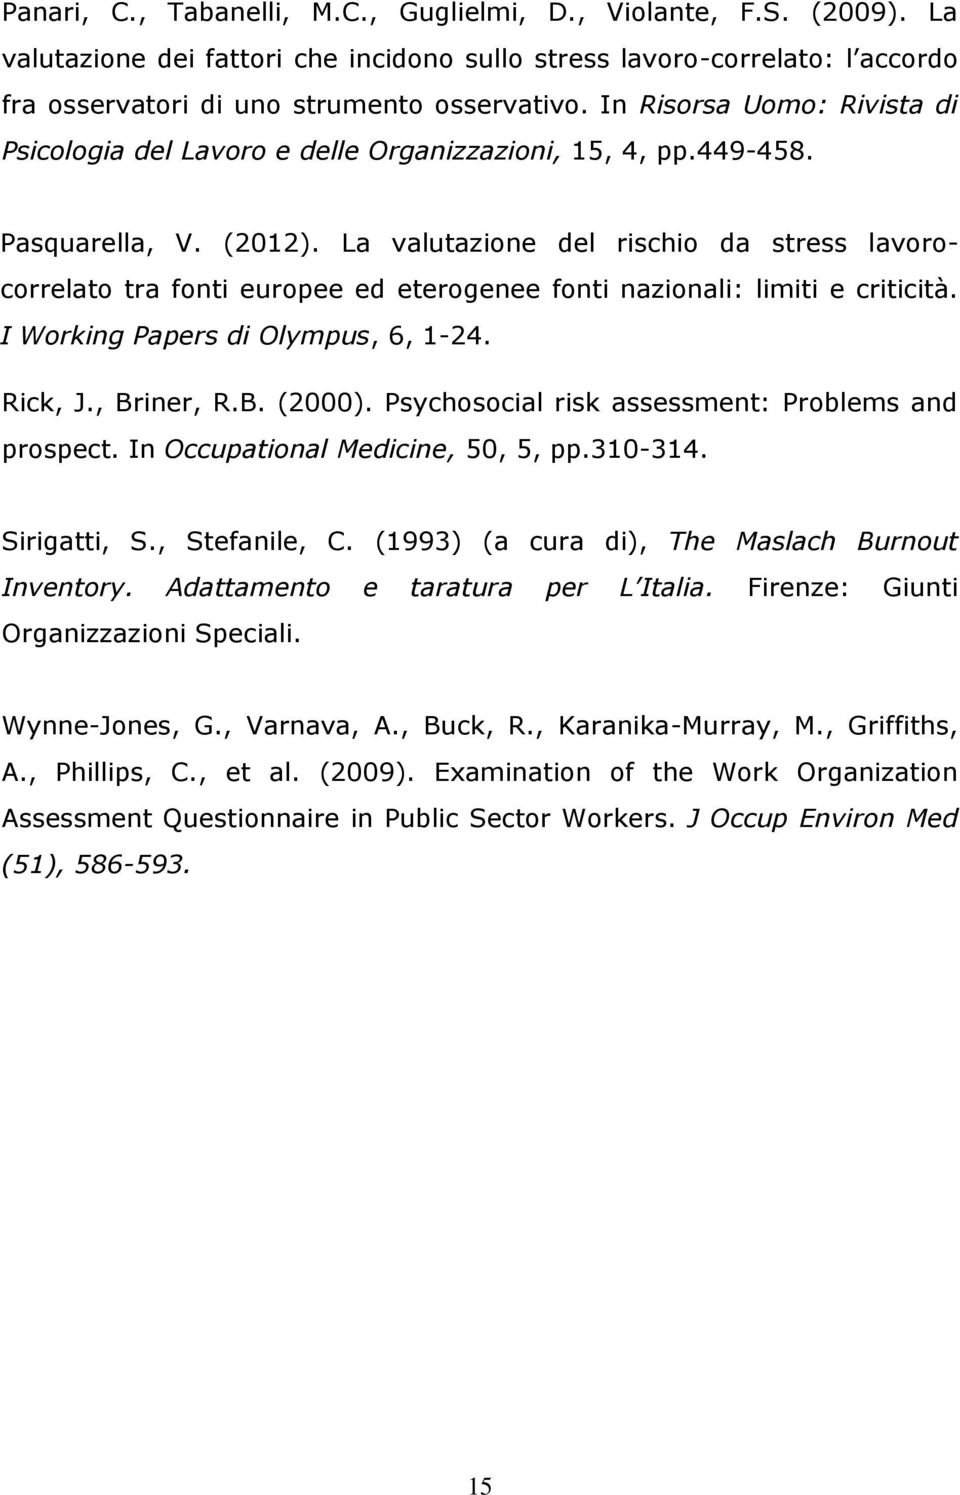 La valutazione del rischio da stress lavorocorrelato tra fonti europee ed eterogenee fonti nazionali: limiti e criticità. I Working Papers di Olympus, 6, 1-24. Rick, J., Briner, R.B. (2000).